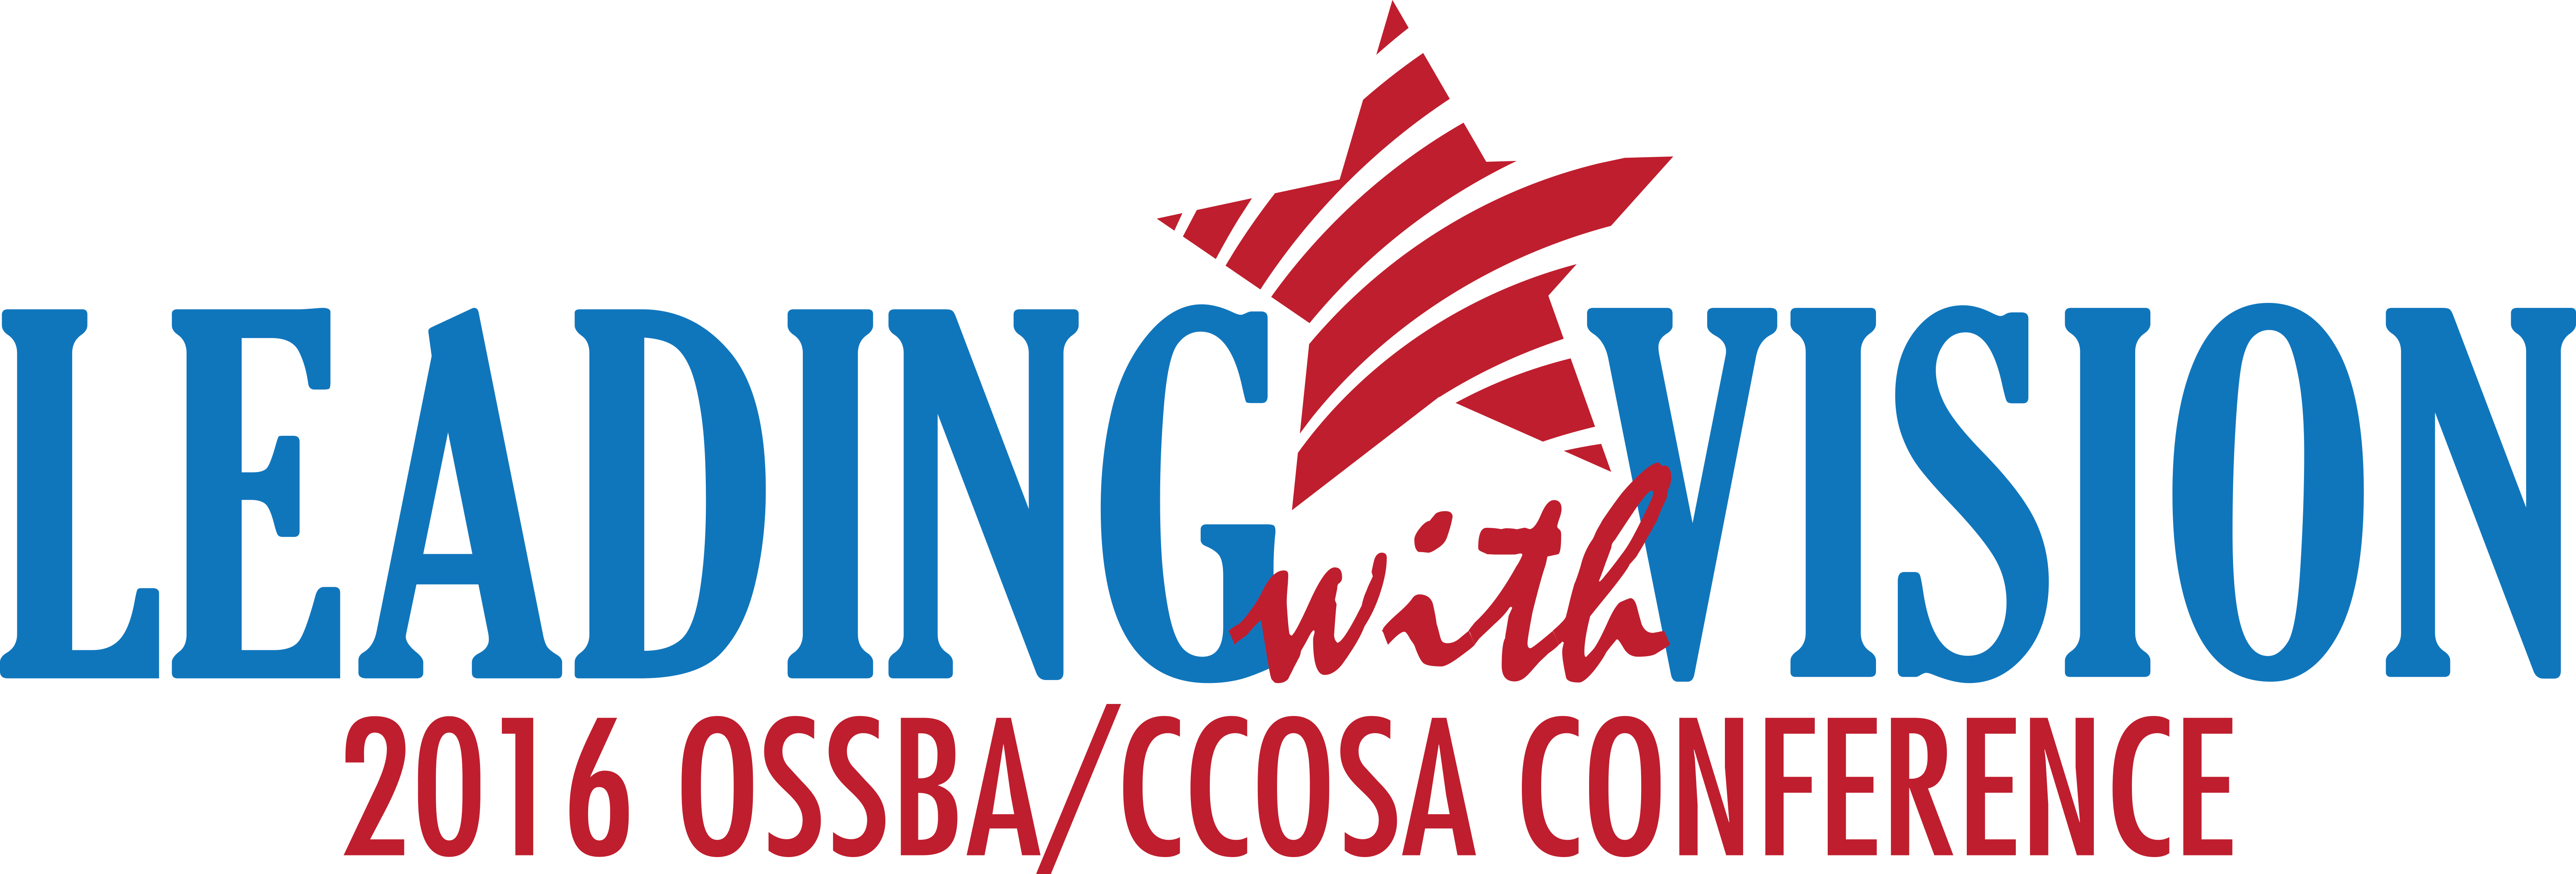 OSSBA/CCOSA Annual Conference